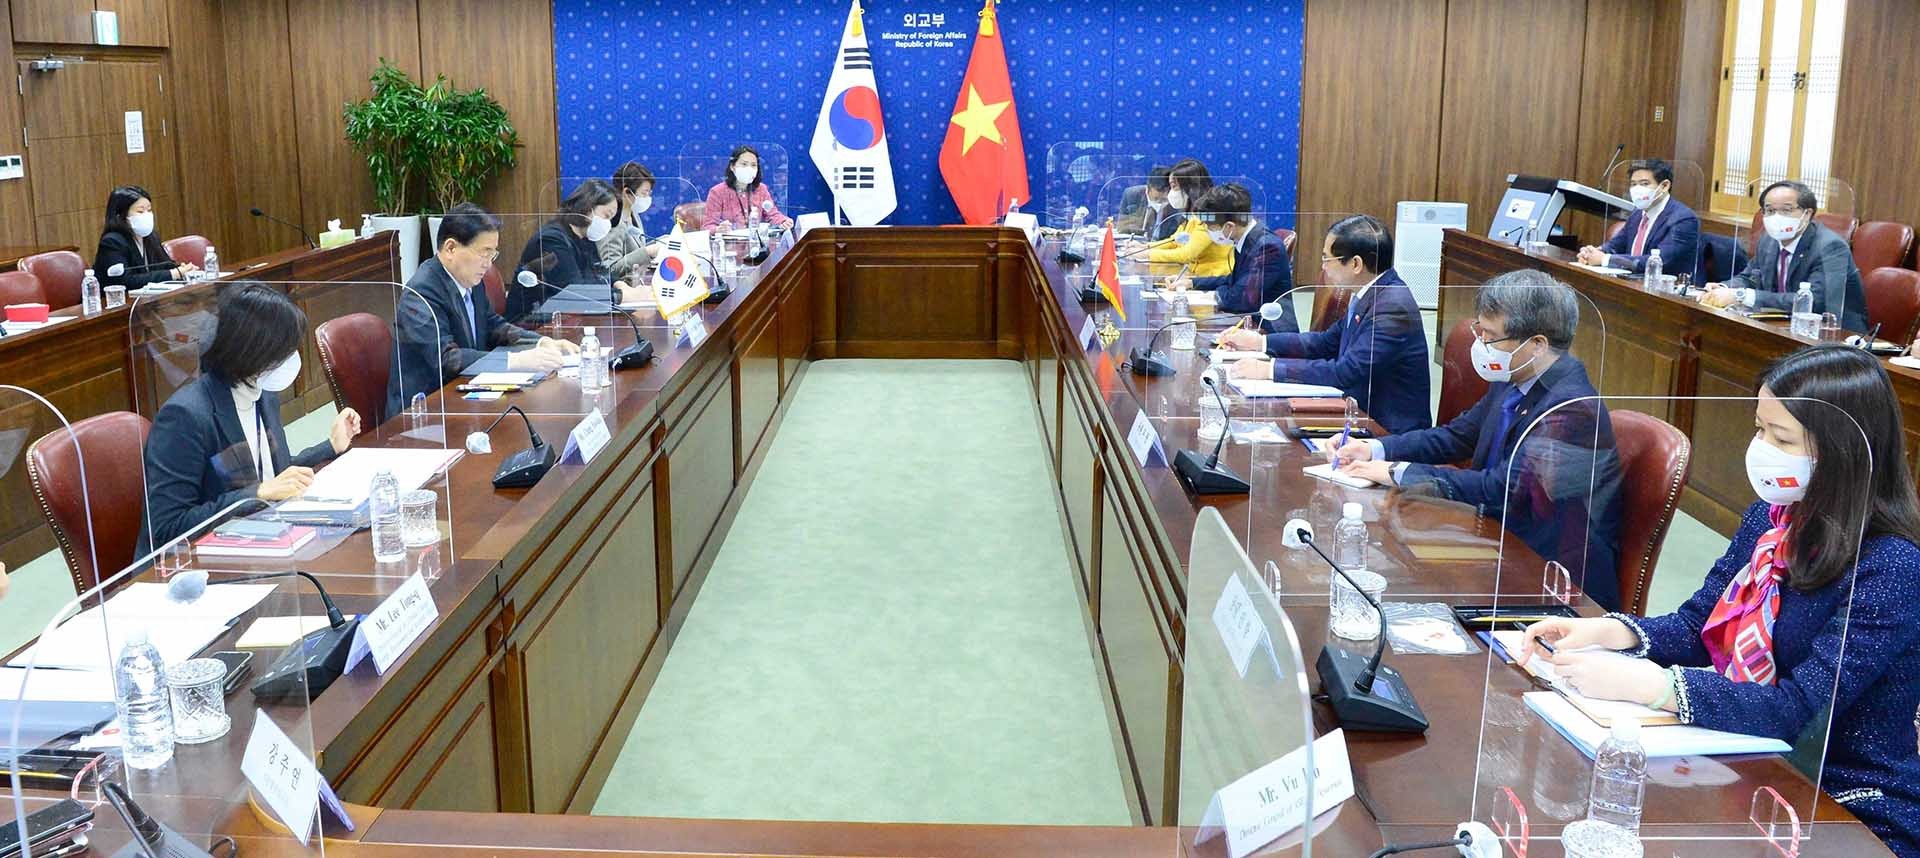 Bộ trưởng Ngoại giao Bùi Thanh Sơn hội đàm với Bộ trưởng Ngoại giao Hàn Quốc Chung Eui-yong